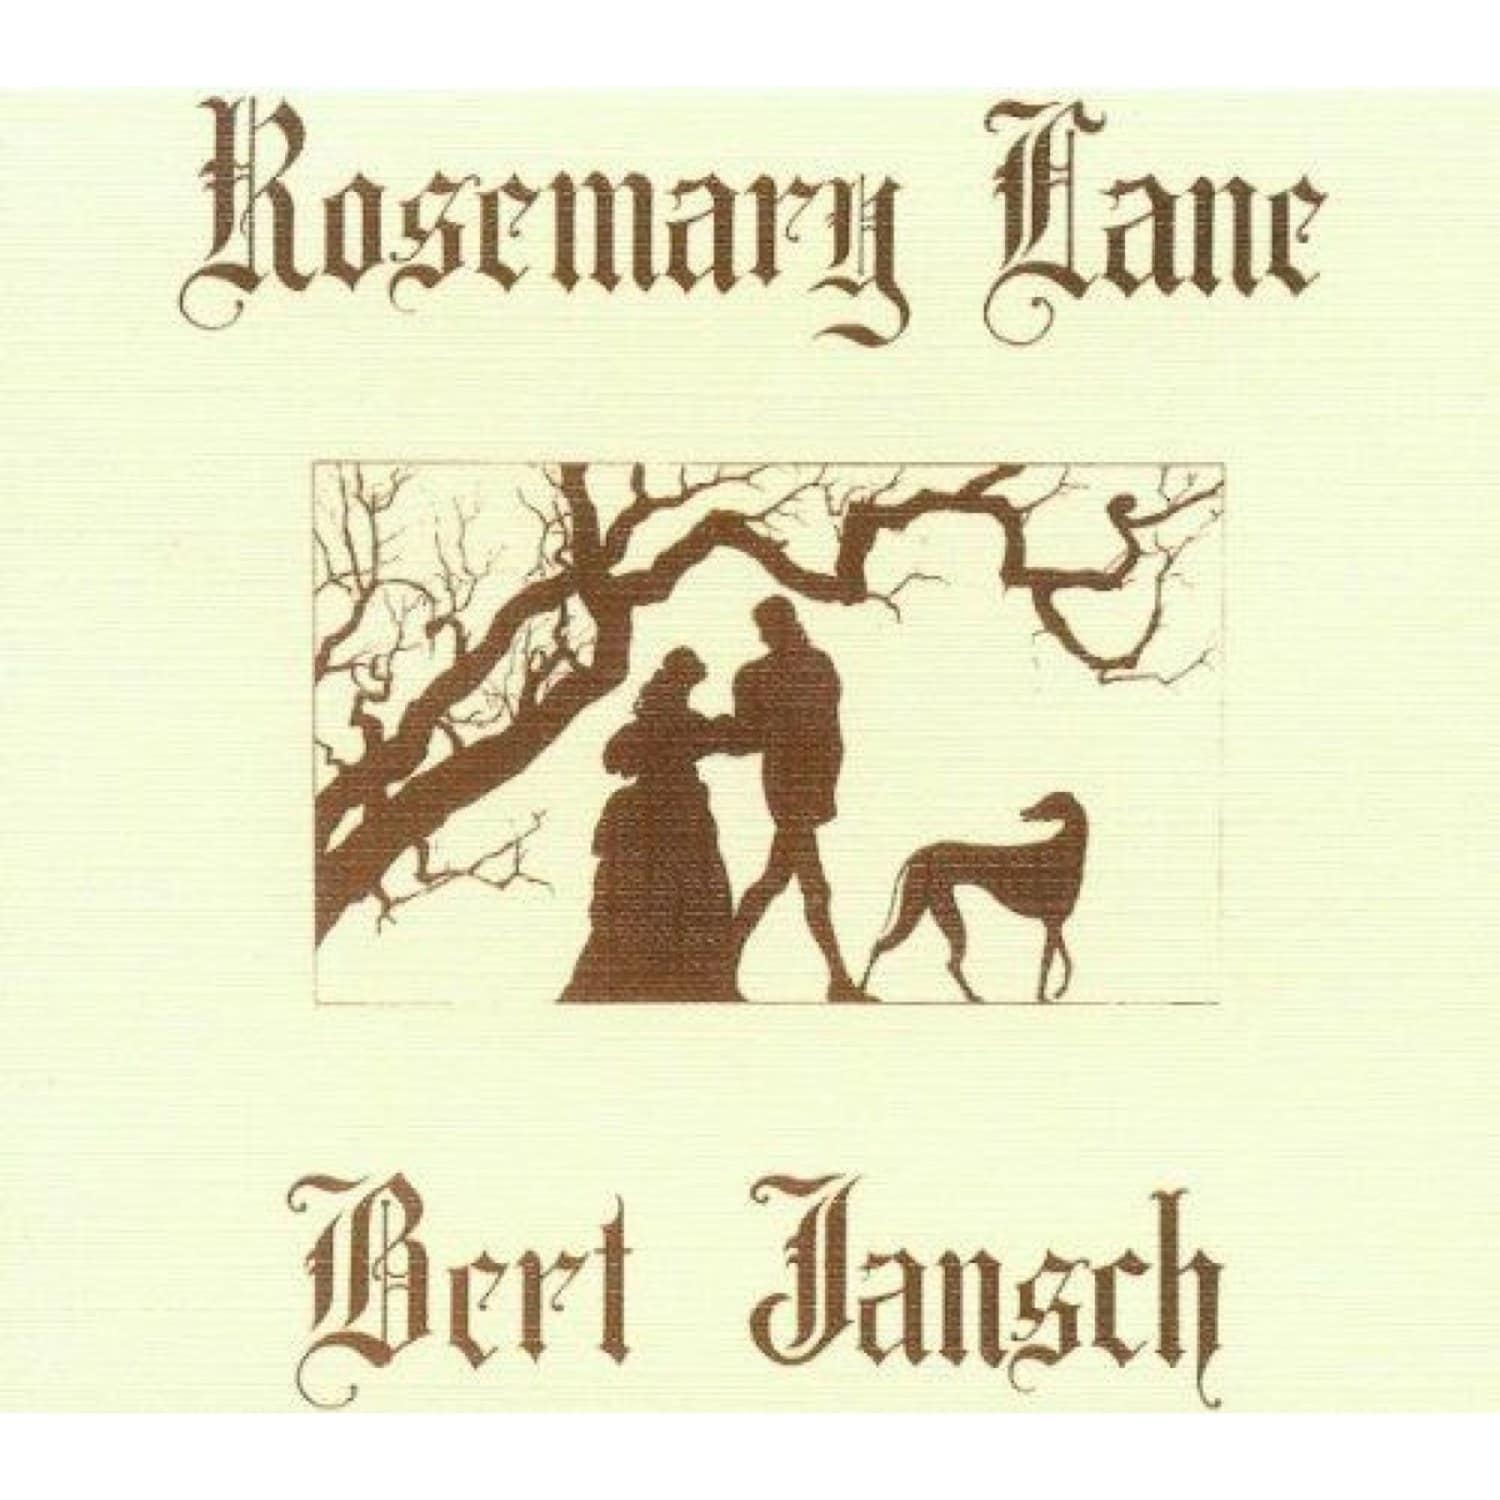 Bert Jansch - ROSEMARY LANE 